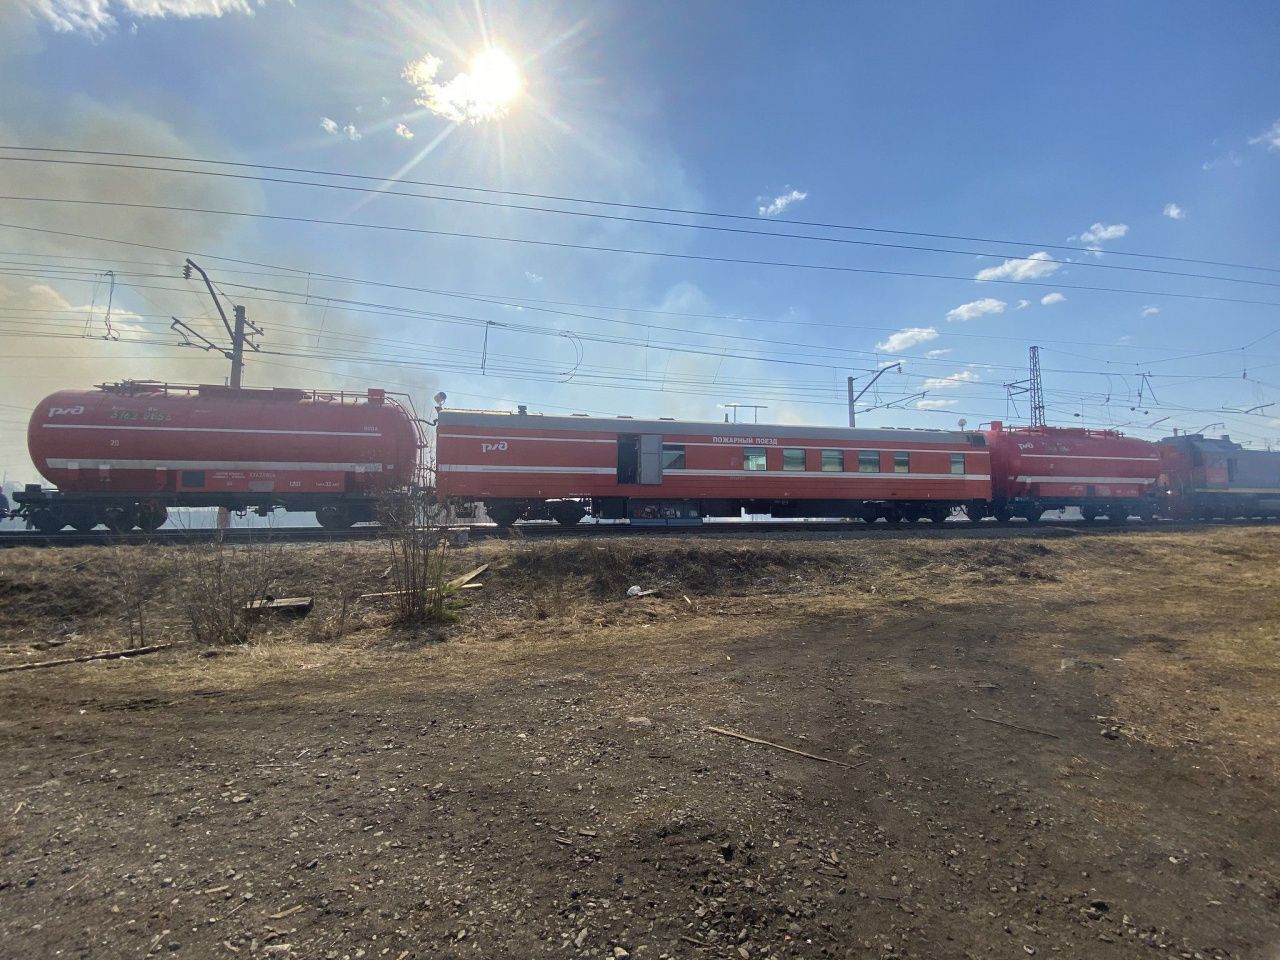 При тушении пожара в Сосьве был задействован пожарный поезд